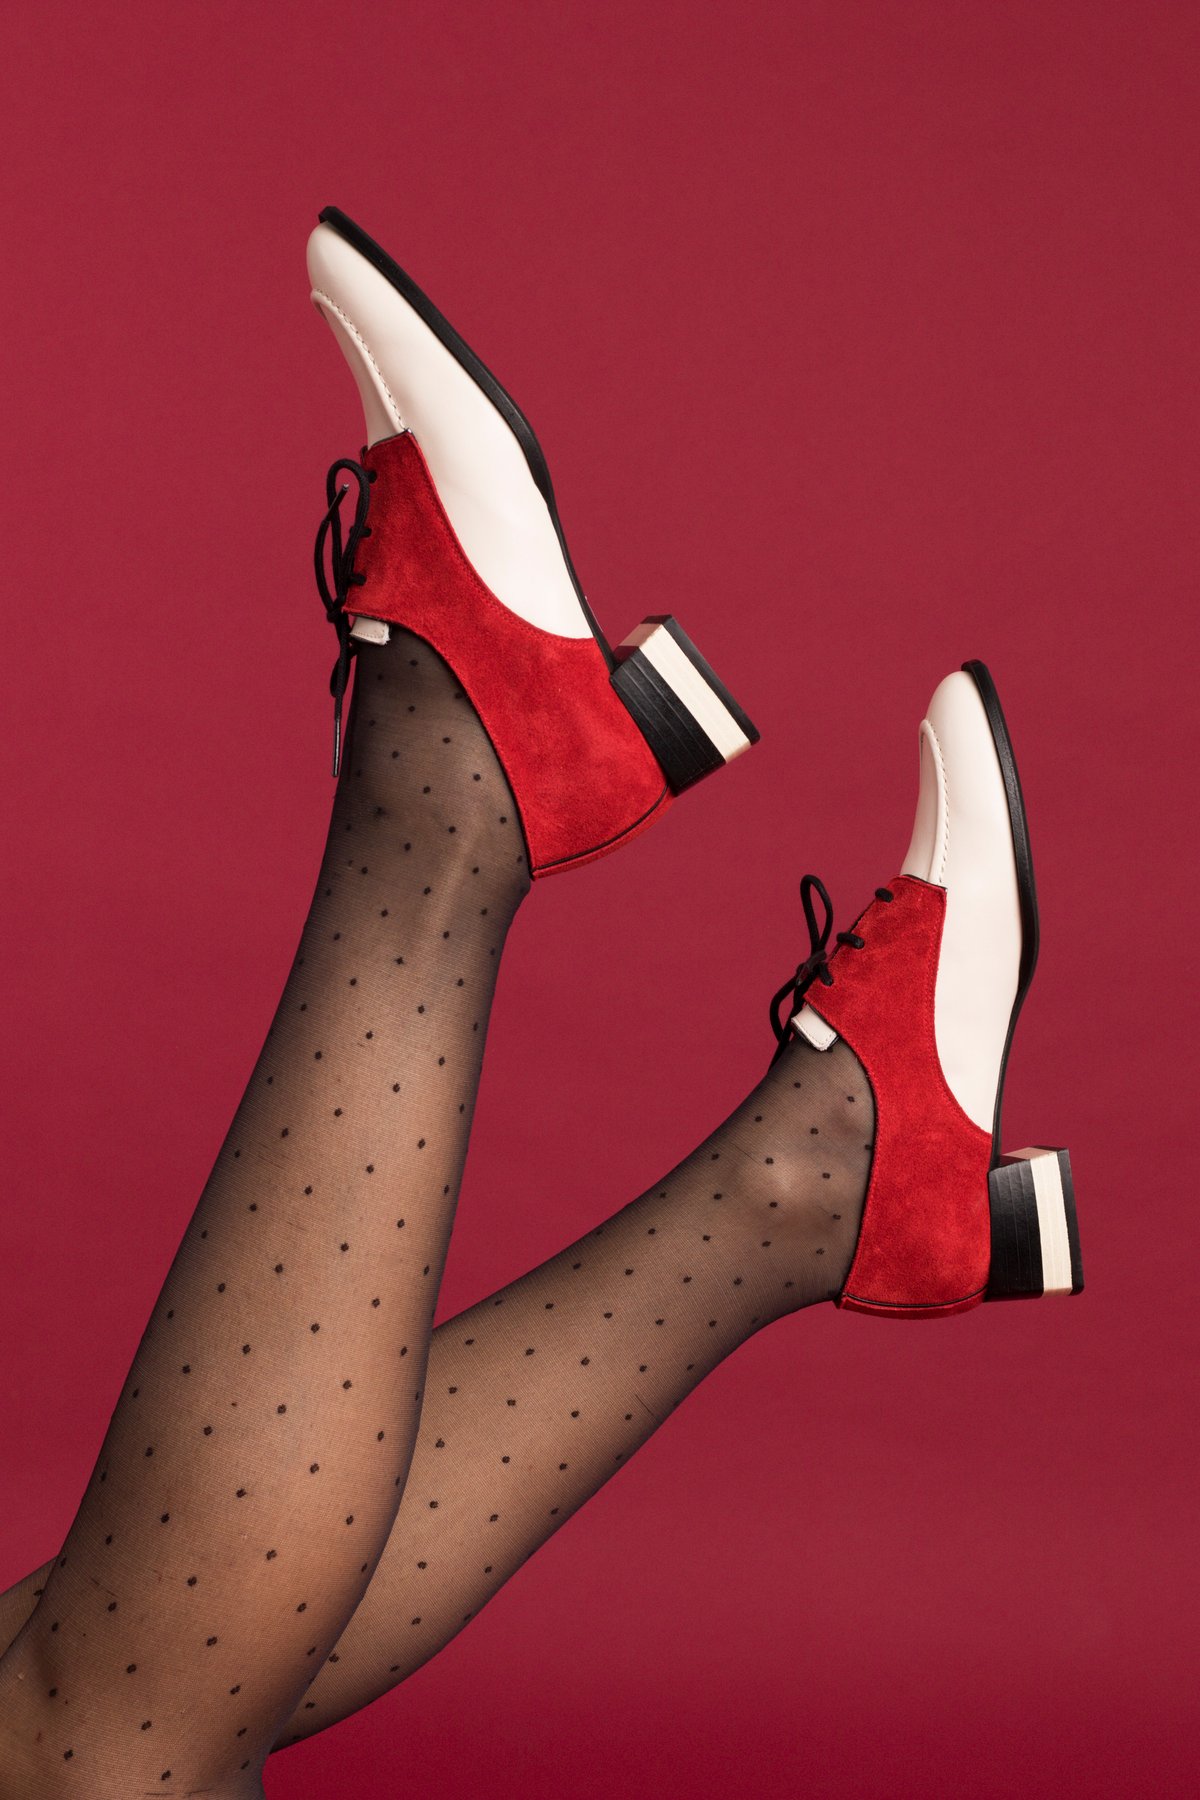 Image of Zapato bajo rojo, blanco y negro